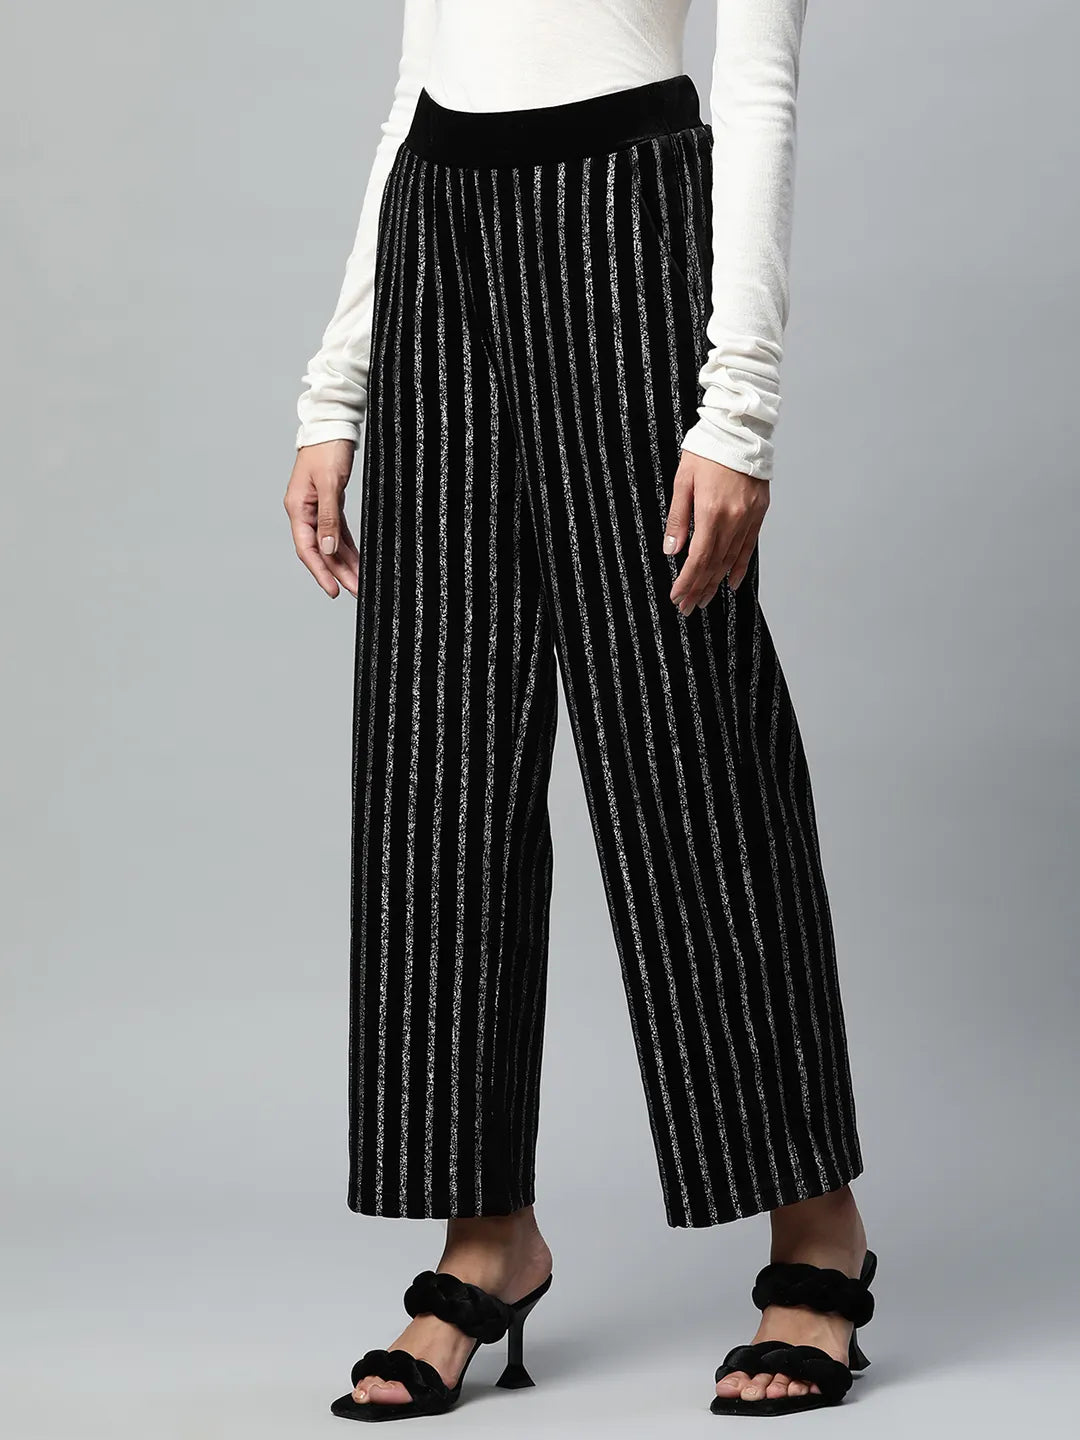 Black Striped Foil Printed Velvet Trousers